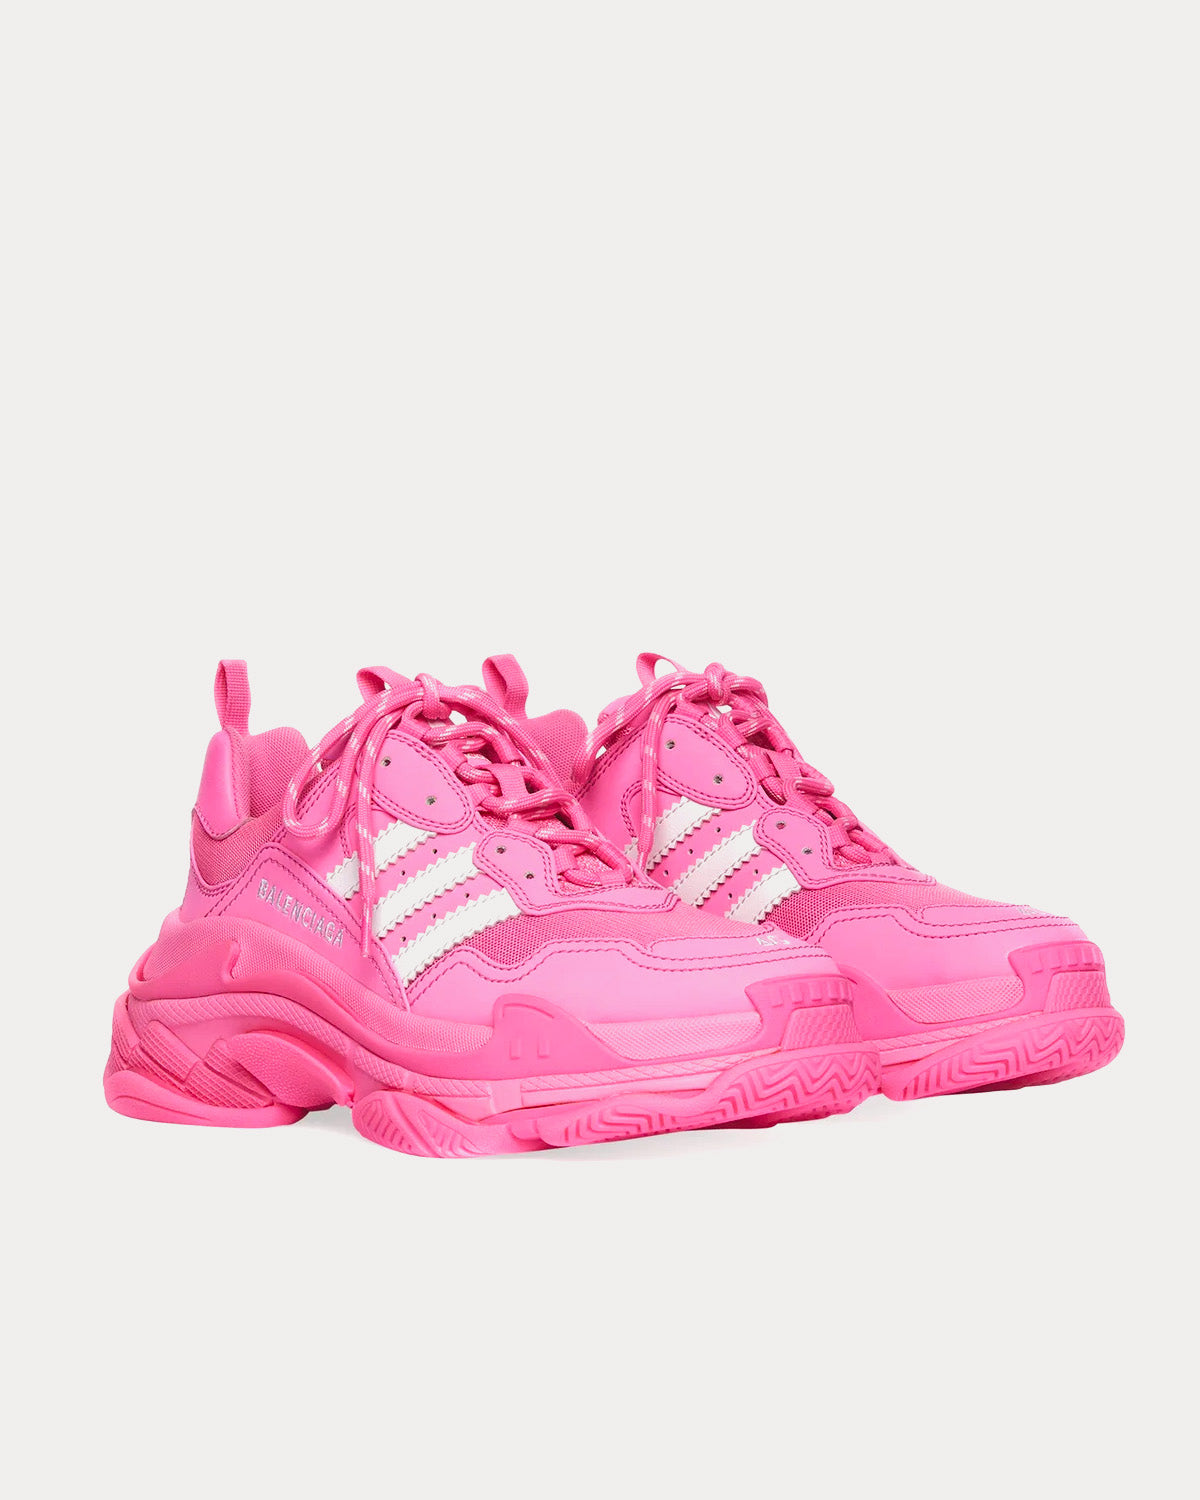 Balenciaga x Adidas Triple S Pink / White Low Top Sneakers - Sneak 